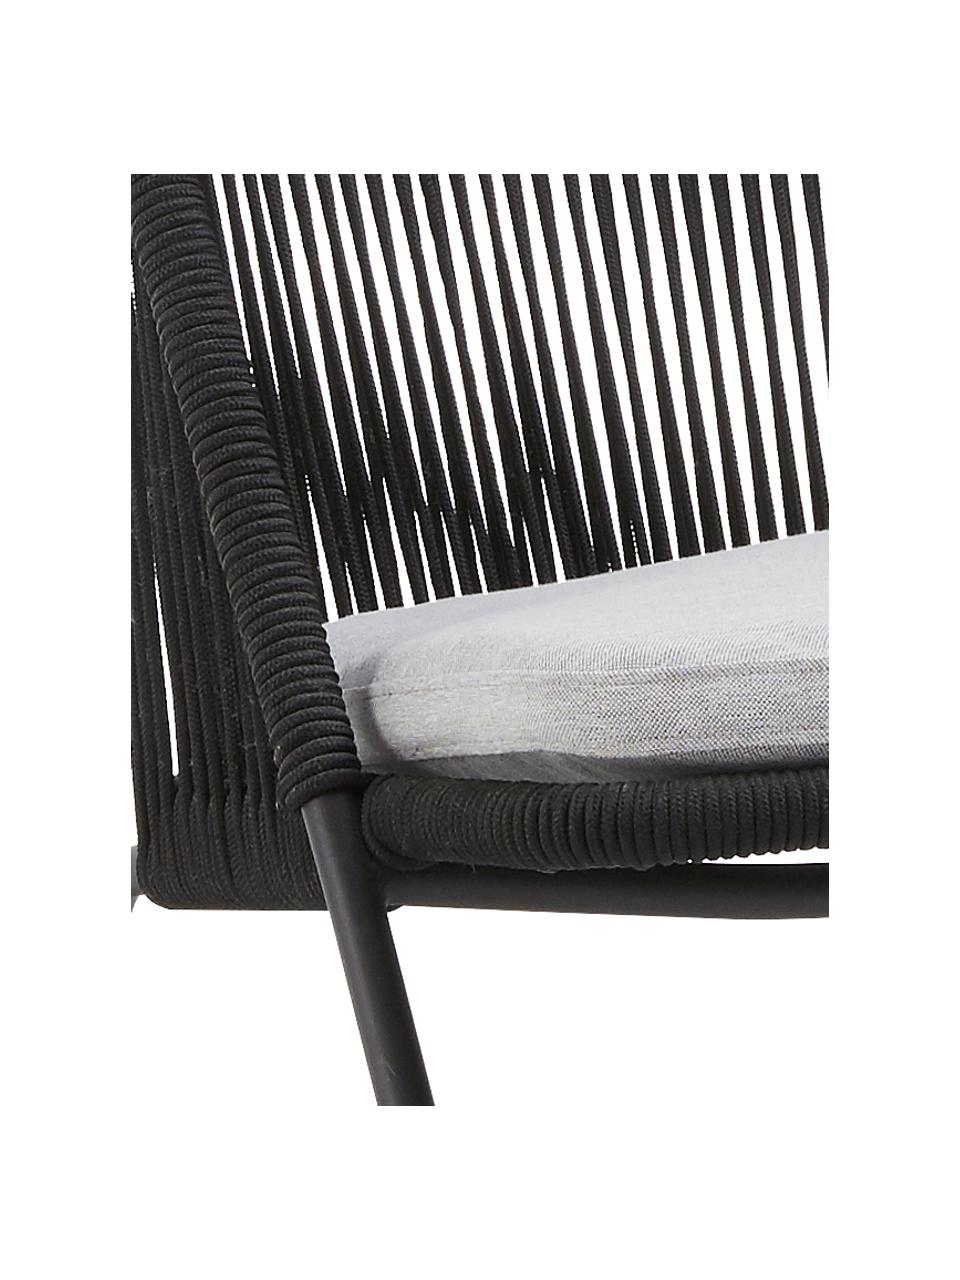 Fotel ze splotu z tworzywa sztucznego Shann, Stelaż: metal malowany proszkowo, Czarny, jasny szary, S 63 x G 73 cm